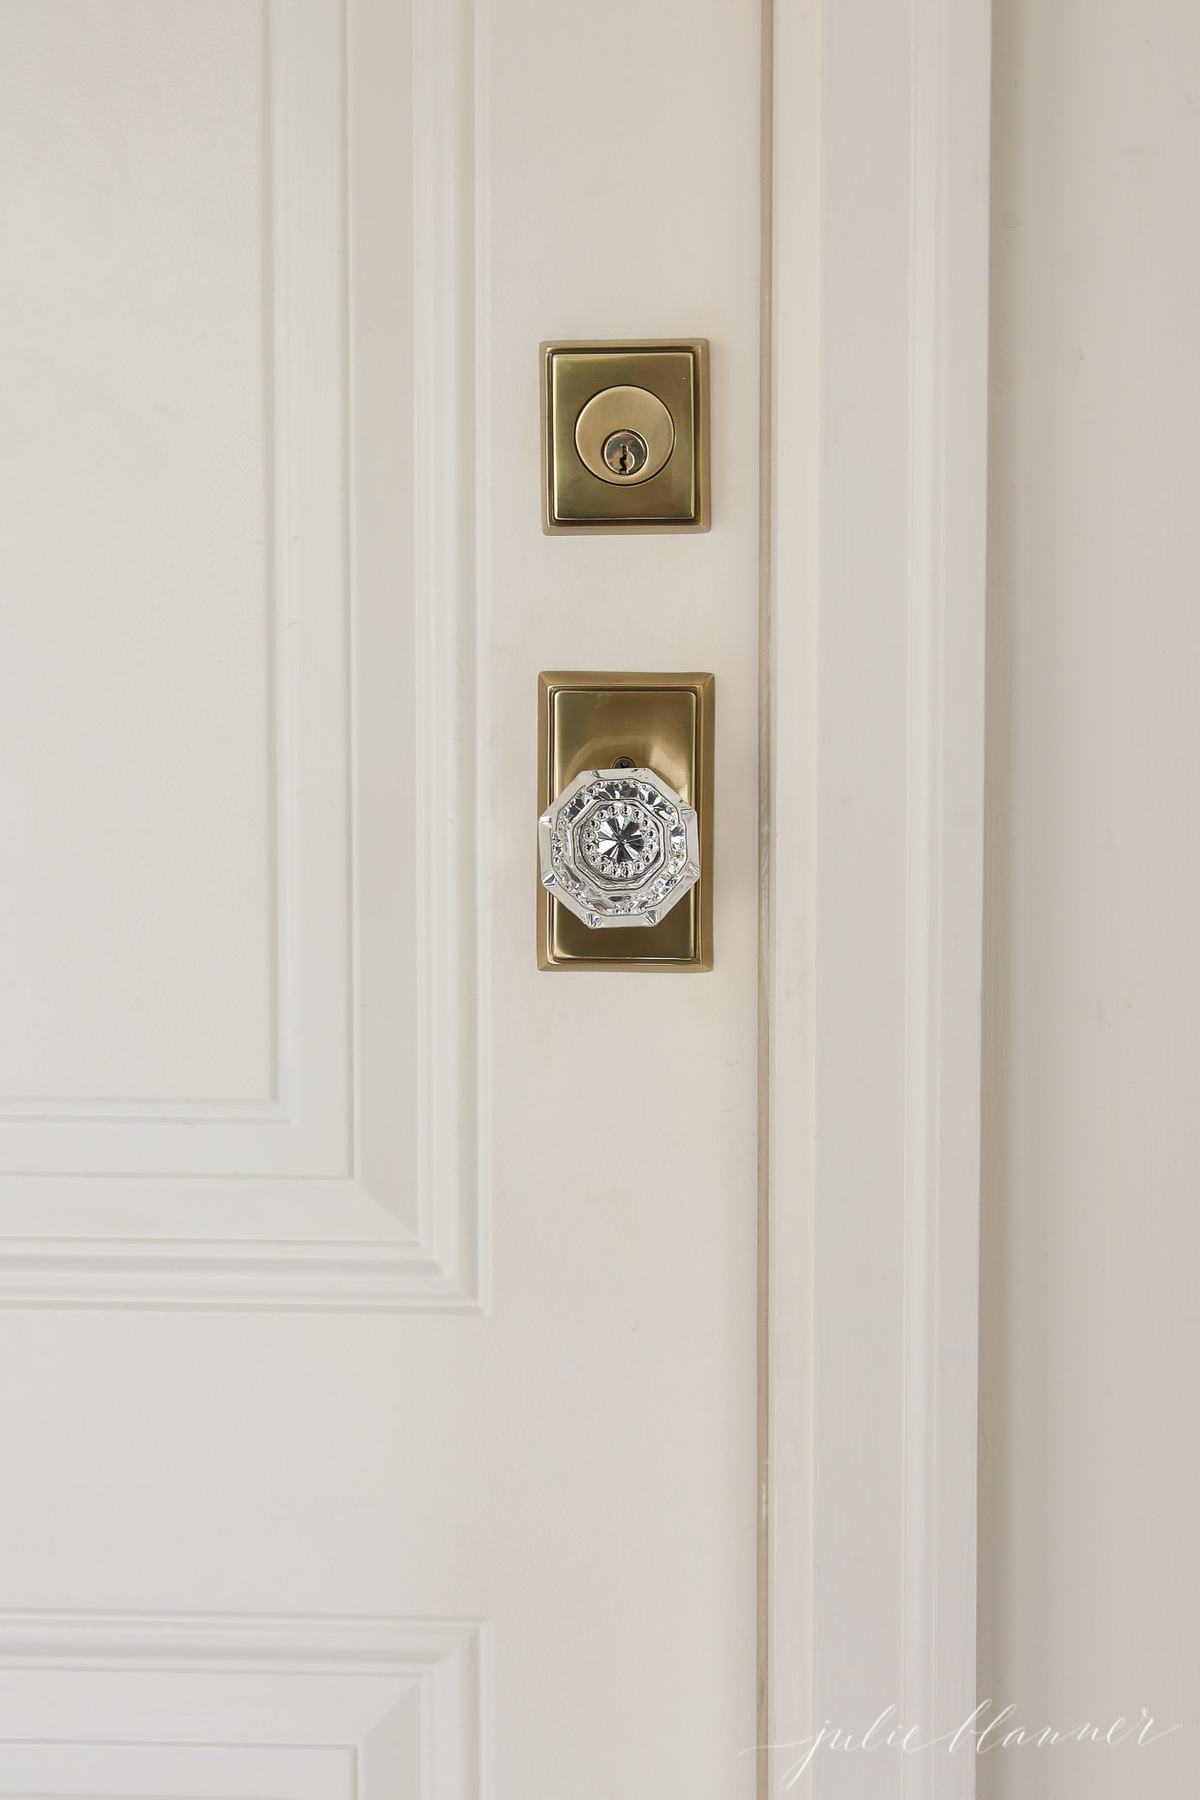 A cream painted door with brass and glass door knob.